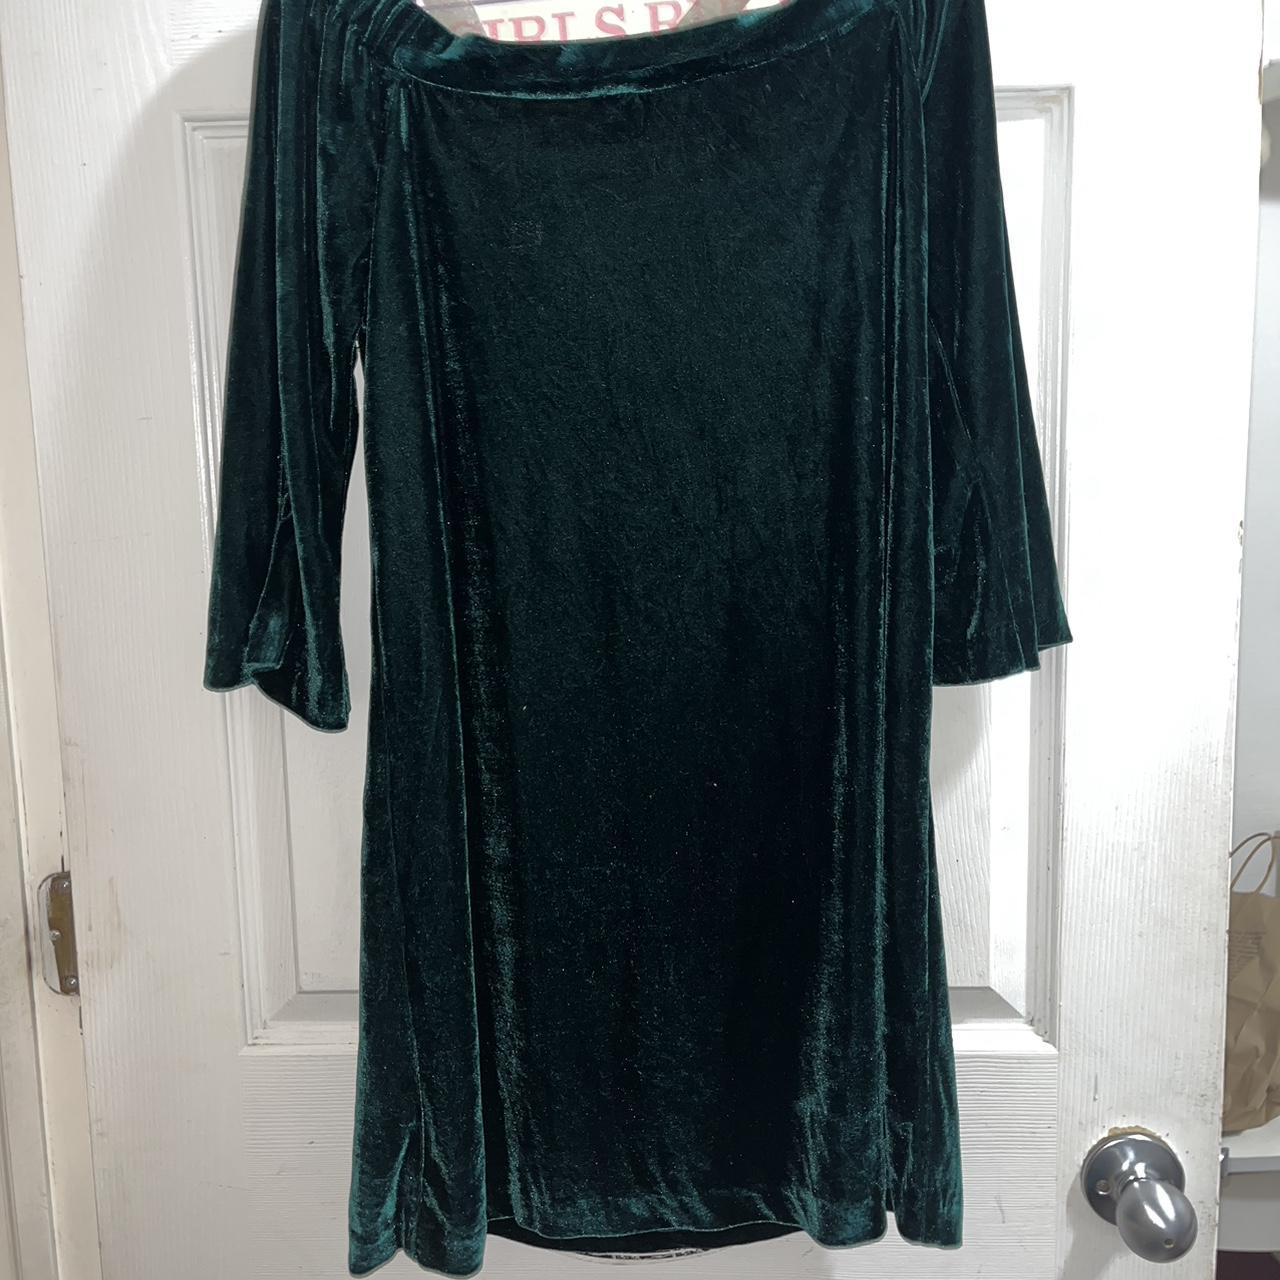 Product Image 2 - Green Velvet Off-Shoulder Dress
Brand: Donna